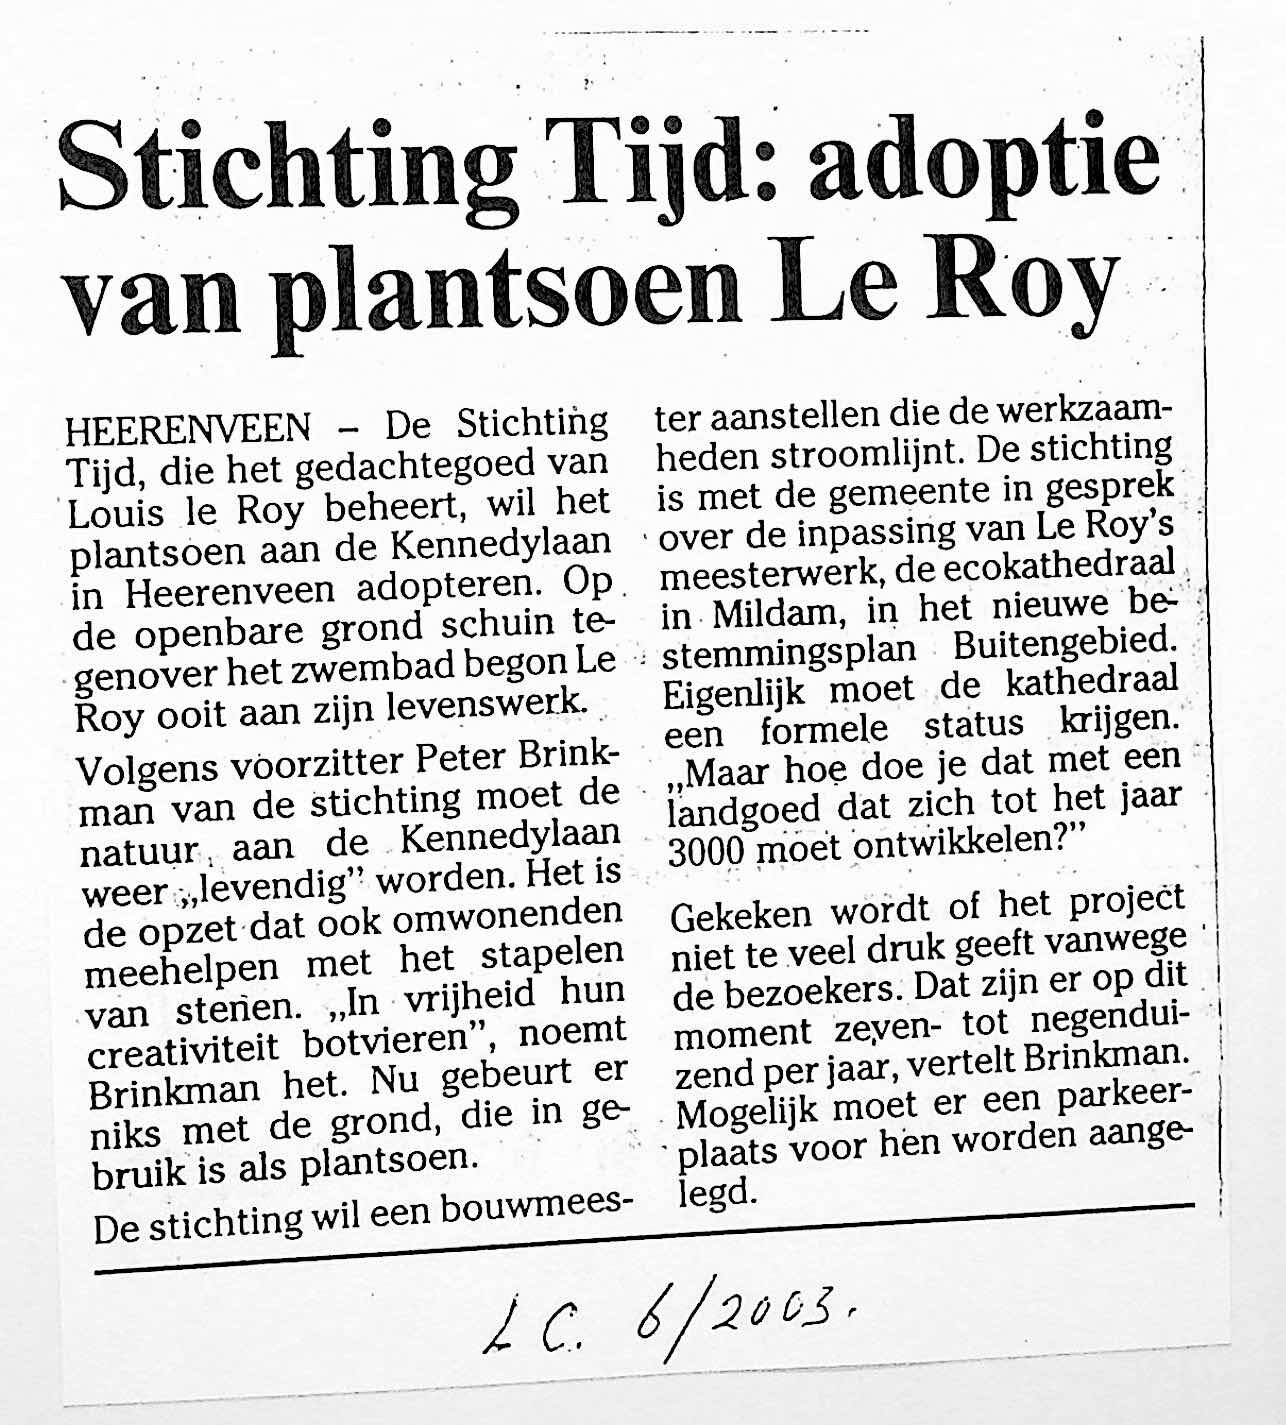 Stichting Tijd adoptie van plantsoen Le Roy